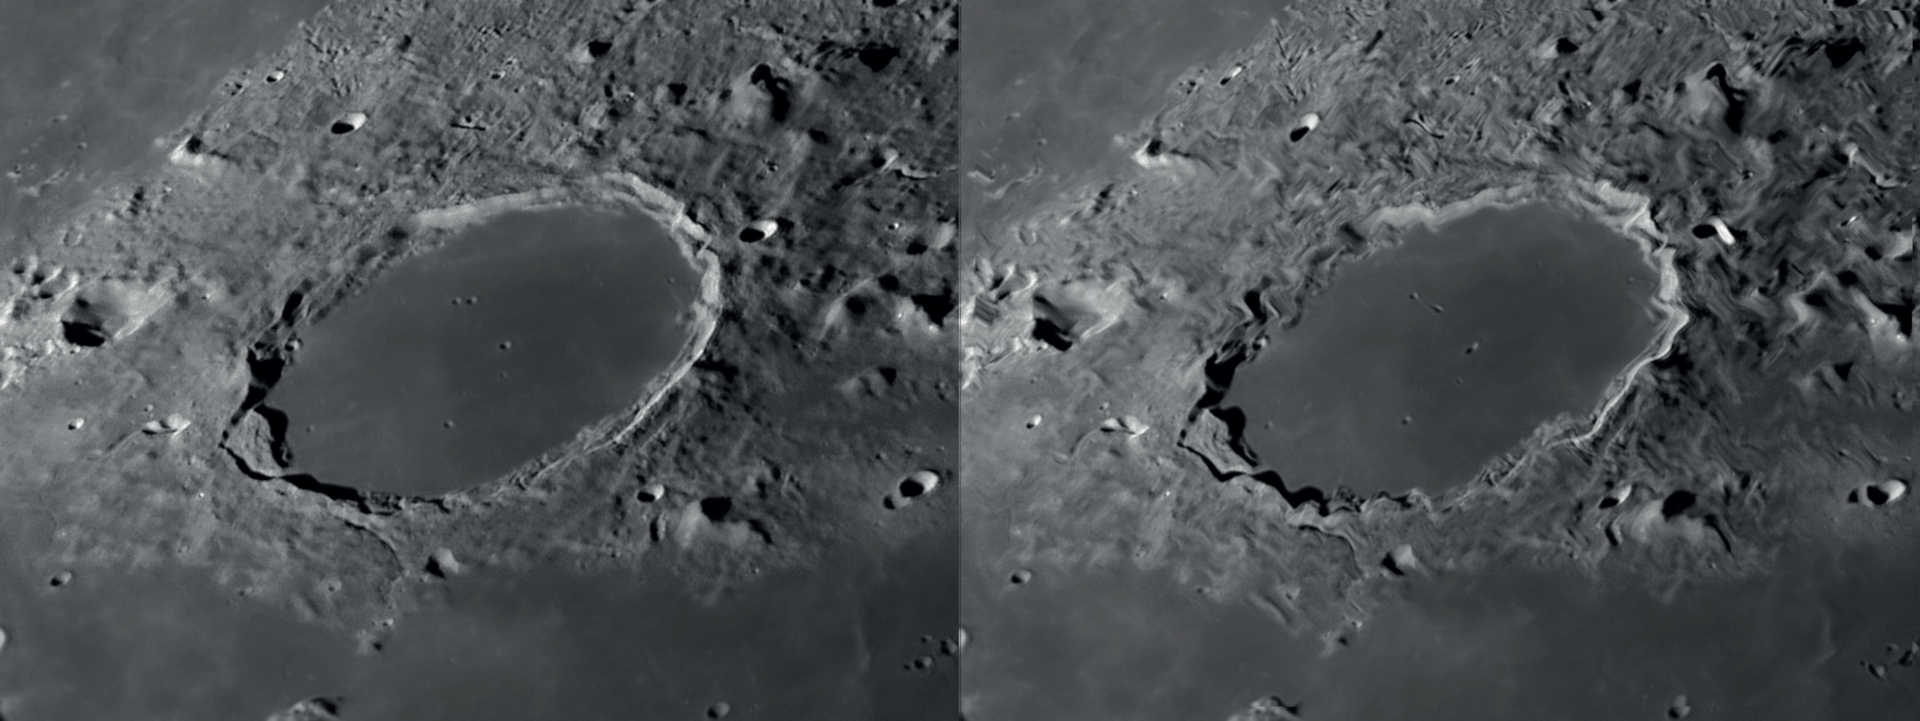 Com boas condições de “seeing”, o reconhecimento de detalhes durante a observação da lua e dos planetas (esquerda) é elevado. Movimentos lentos do ar resultam na distorção da imagem local, enquanto as outras áreas de imagem permanecem nítidas (à direita). NASA/GSFC/Arizona State University/L. Spix 